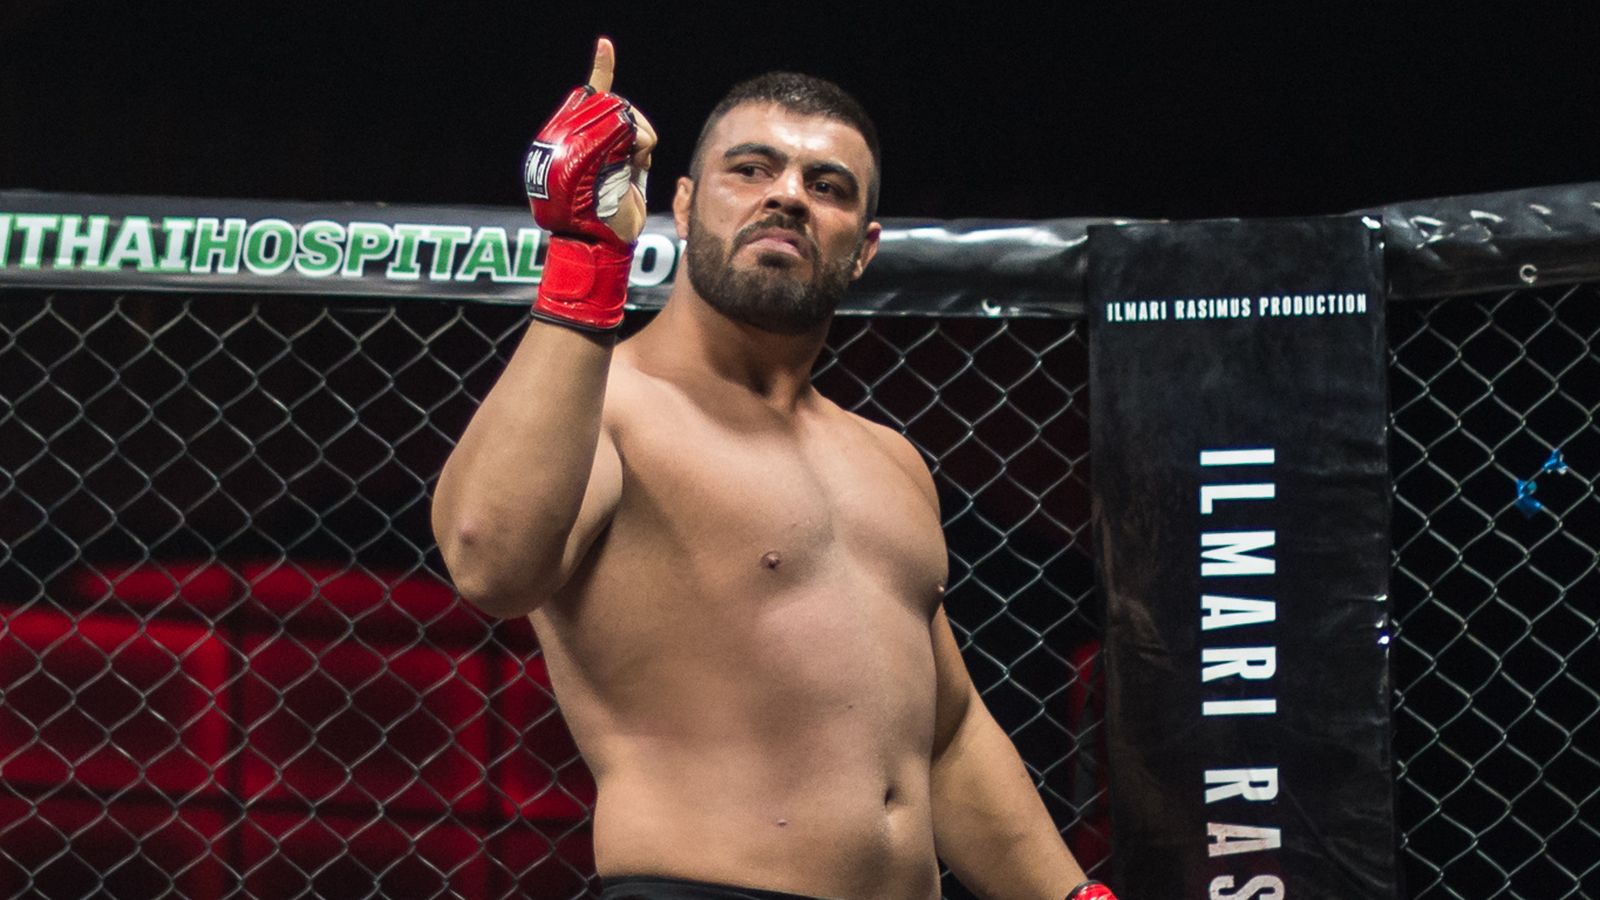 امیر علی اکبری - فایتر ایرانی - MMA - UFC